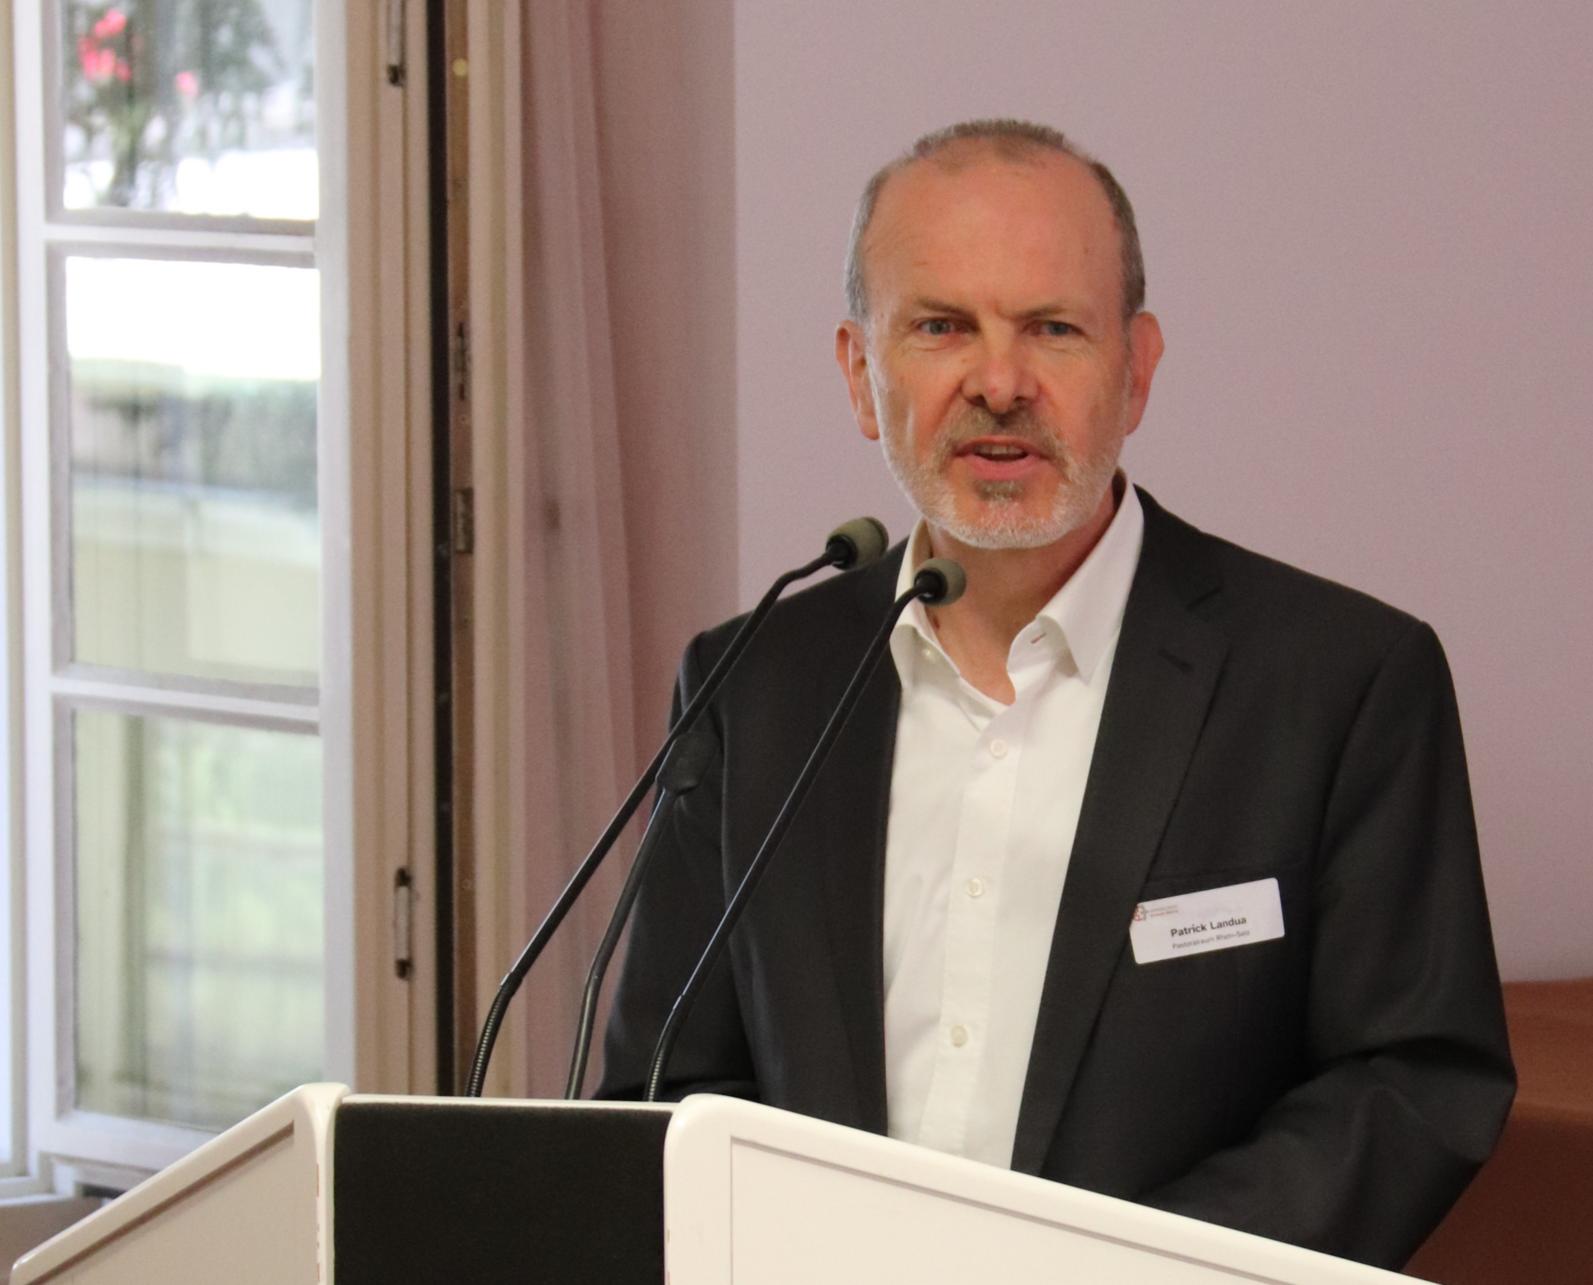 Patrick Landua wurde als Sprecher des Rats bestätigt (c) Bistum Mainz/Hoffmann